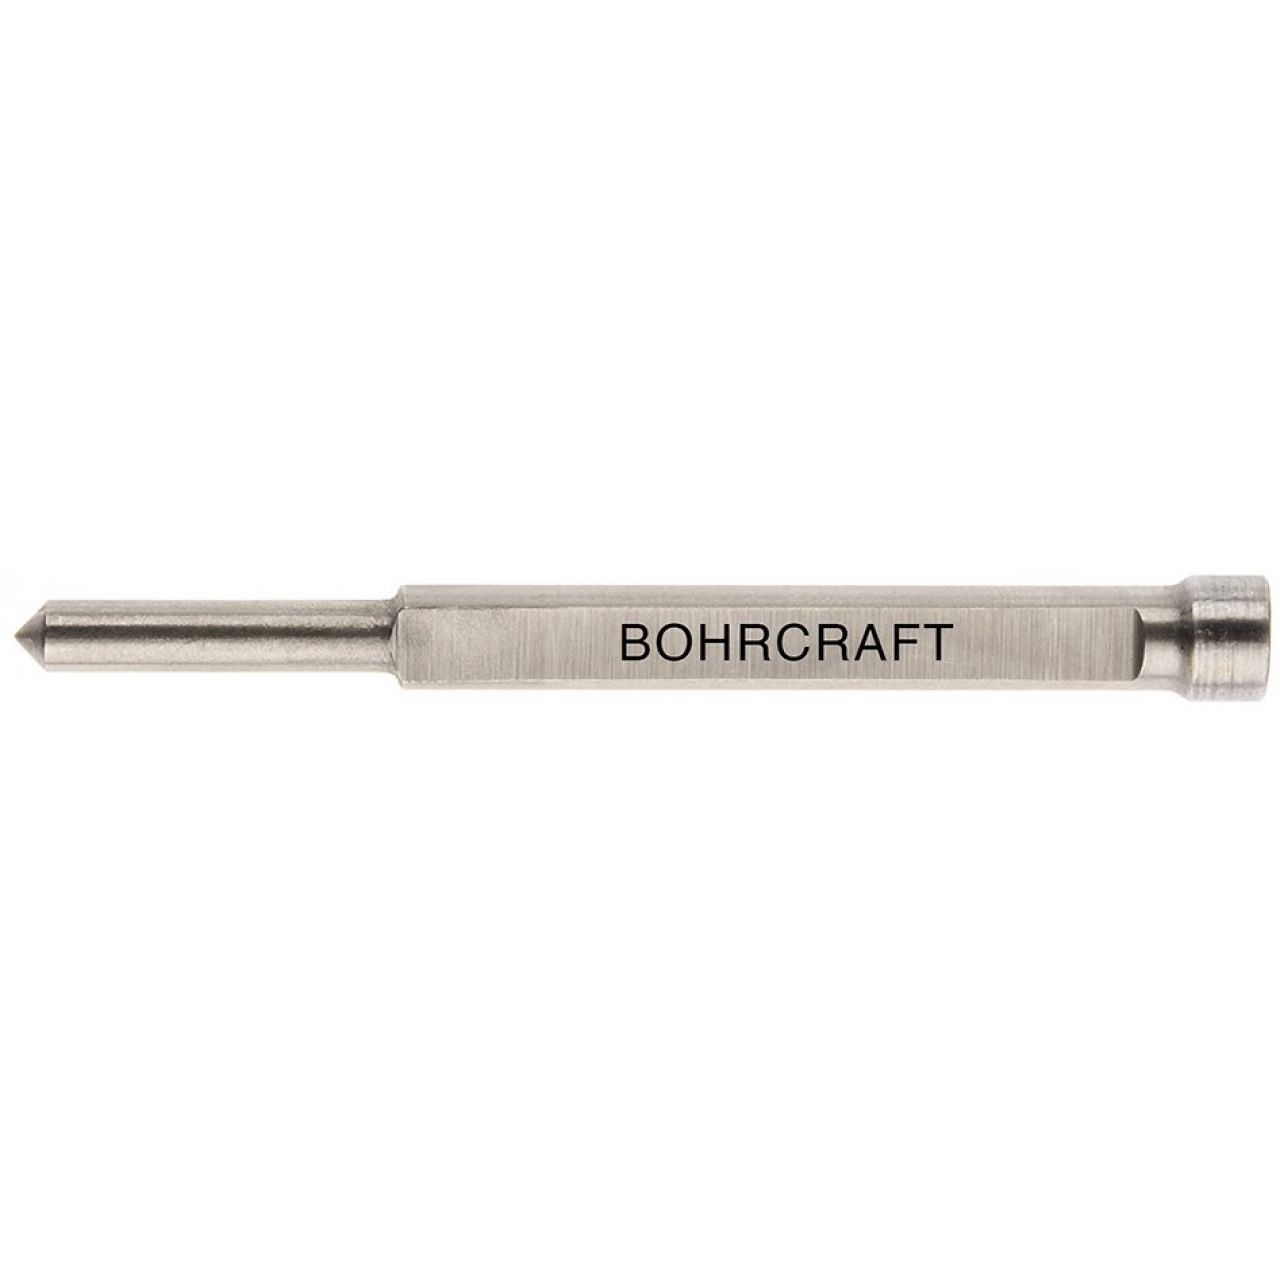 Bohrcraft Expulsor brocas huecas profundidad de corte 50 mm